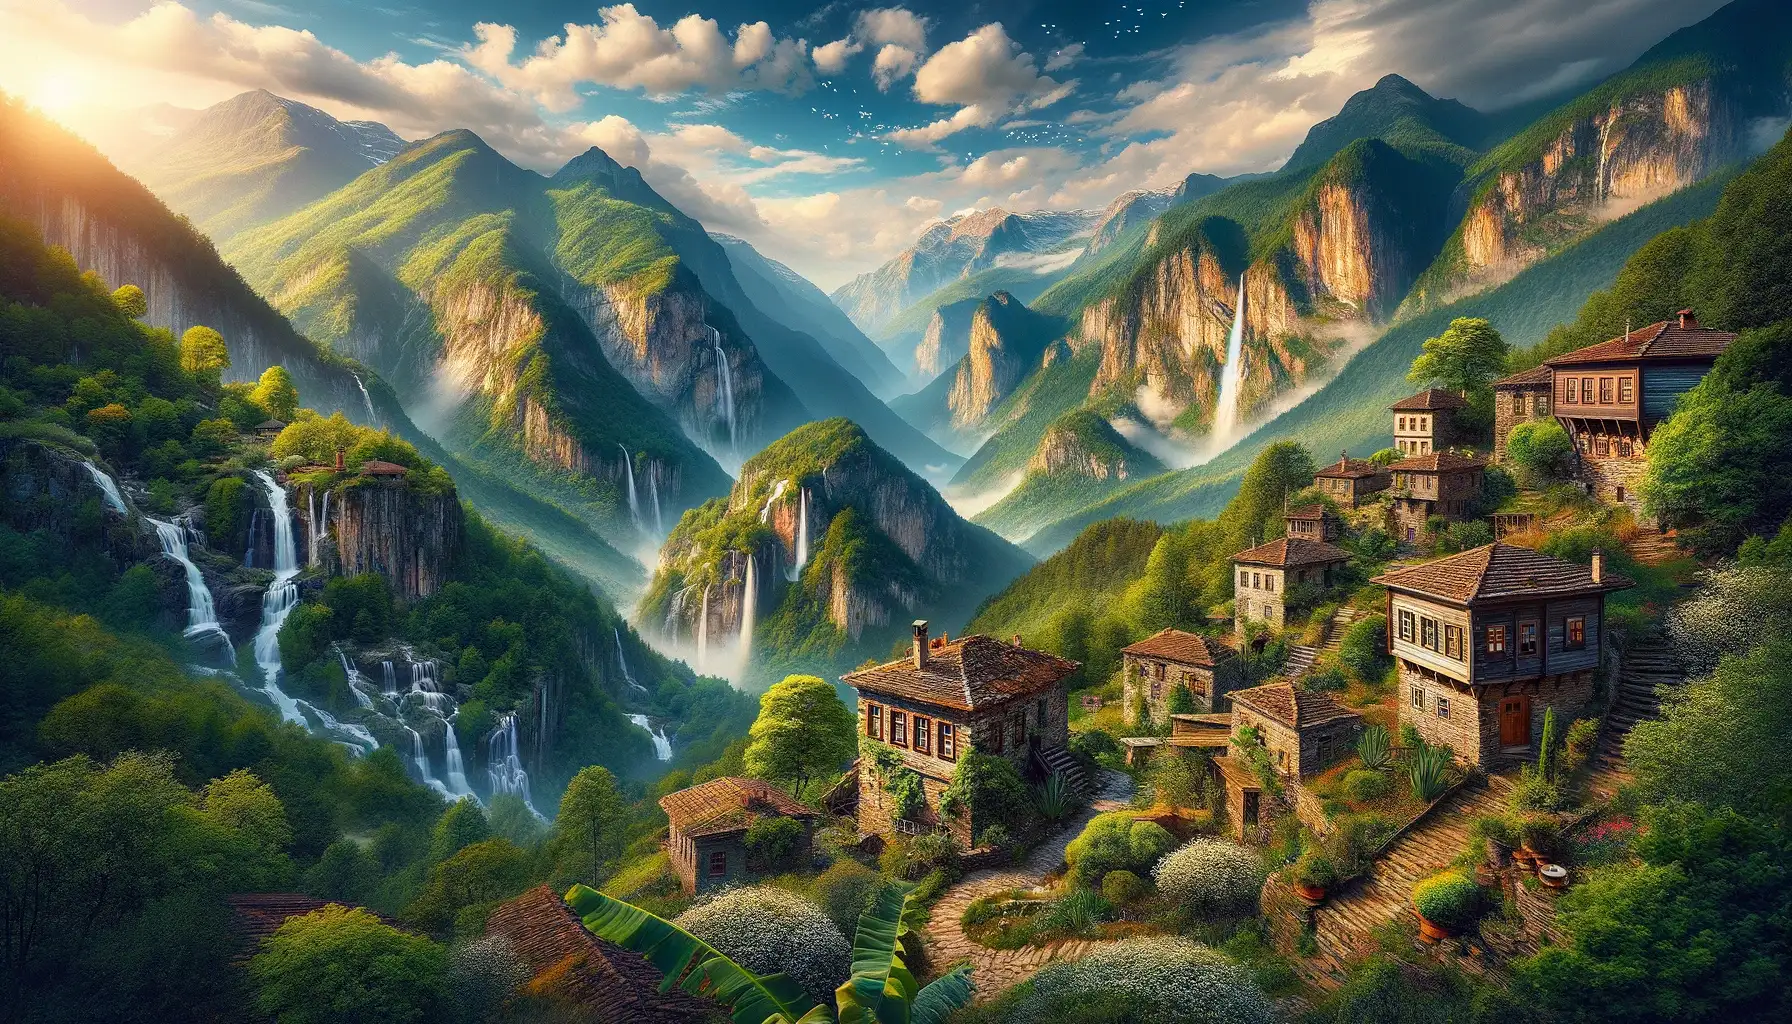 Kaz Dağları, Saklı Köyler